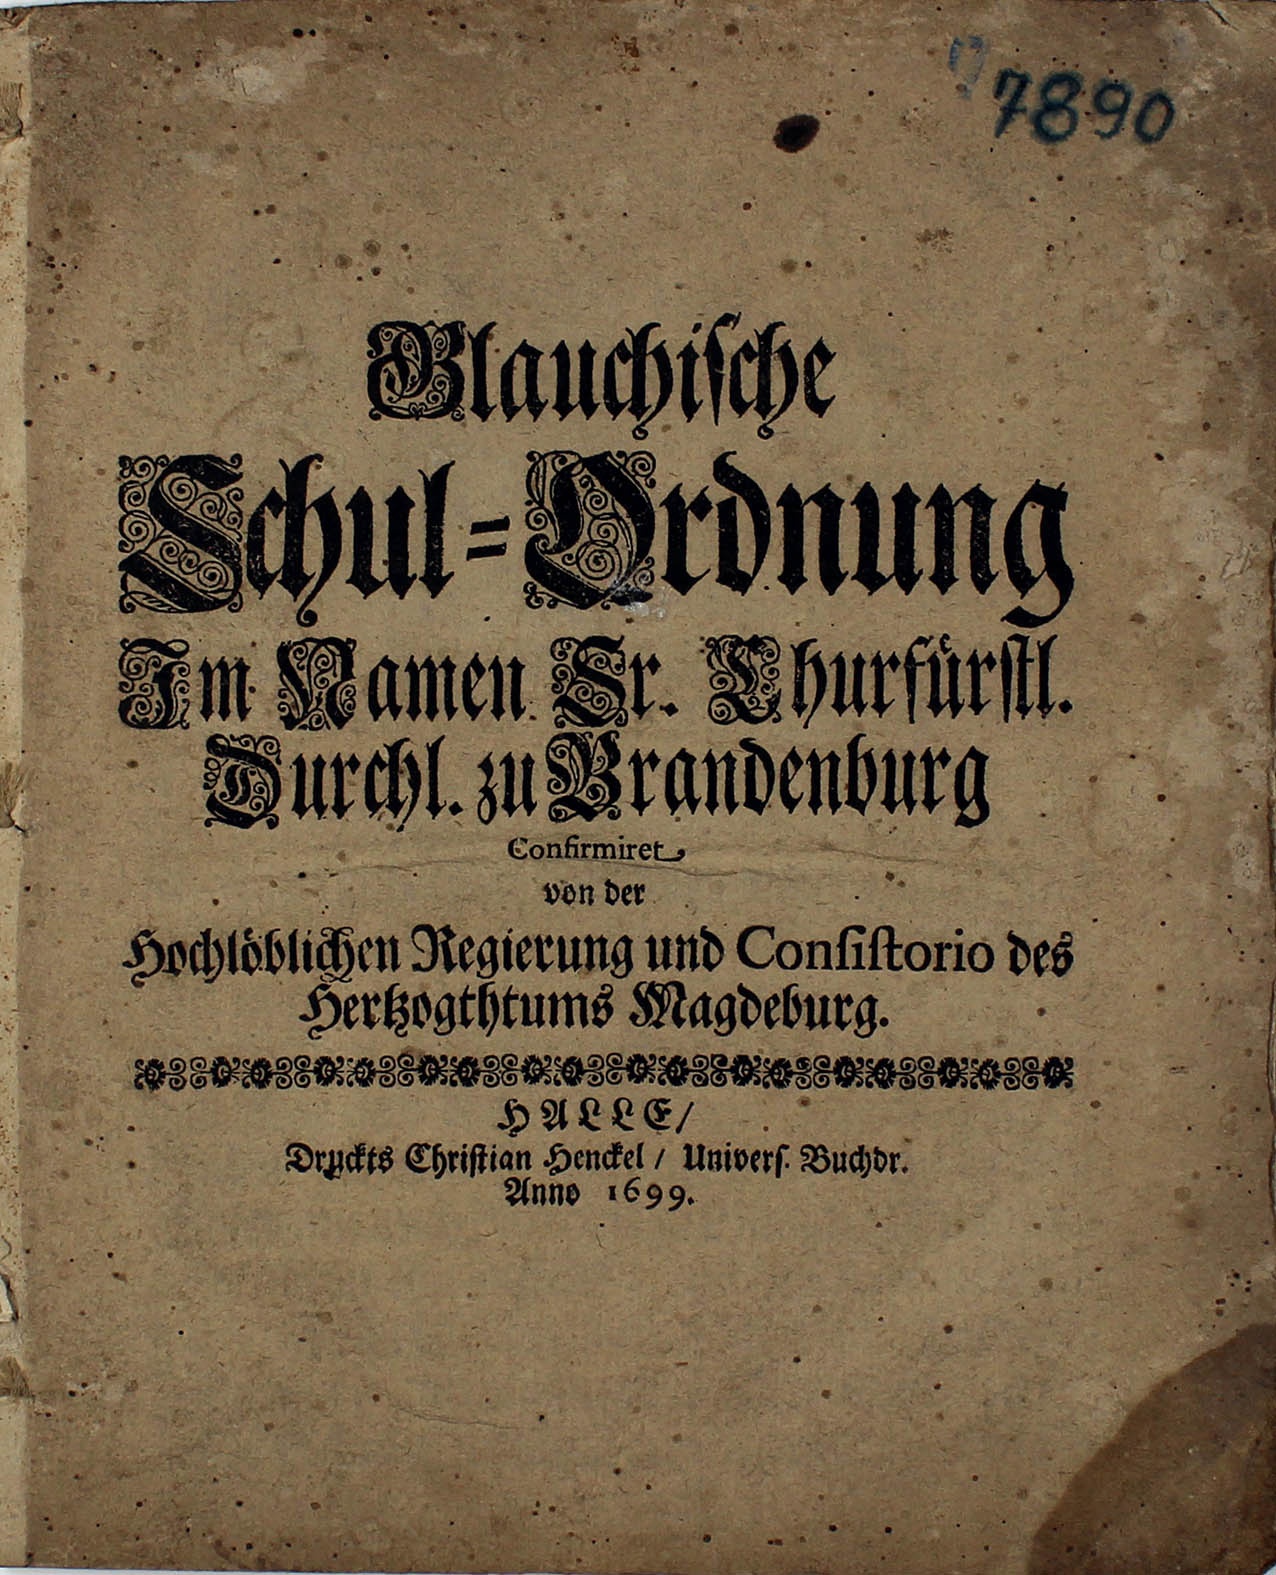 Blauchische Schulordnung, 1699 (Museum Wolmirstedt RR-F)